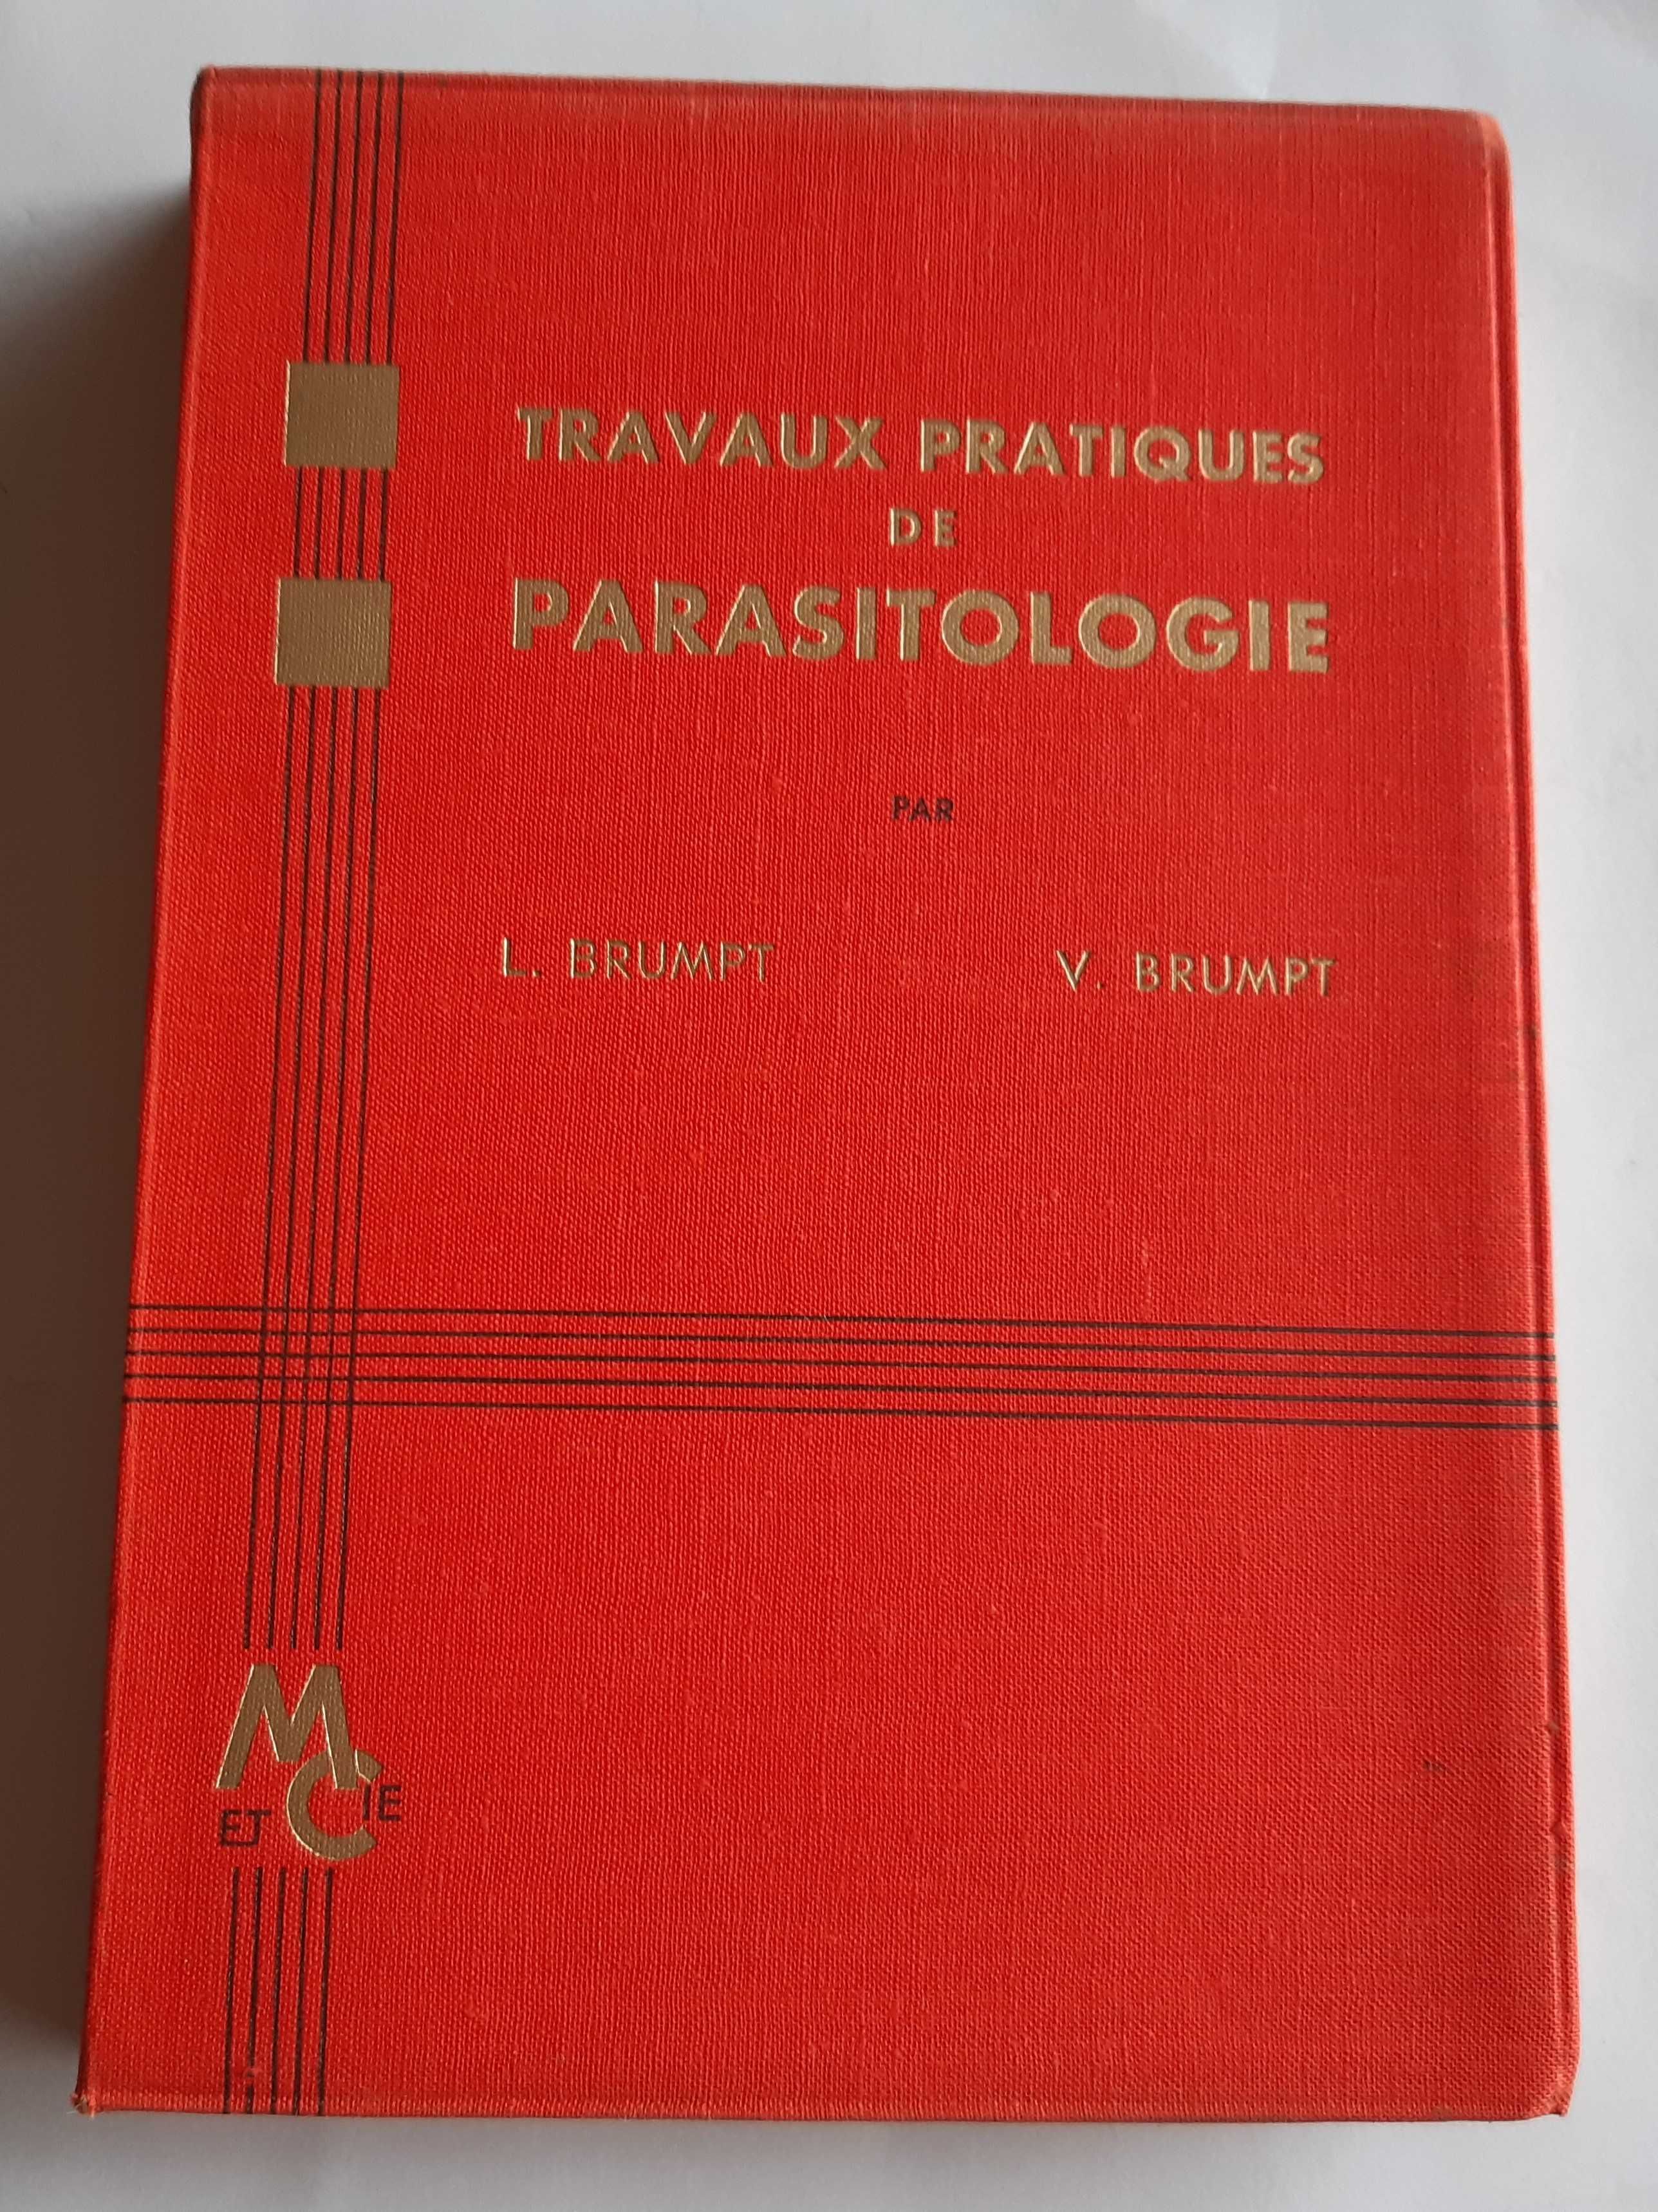 Travaux pratiques de parasitology - L. Brumpt e V. Brumpt